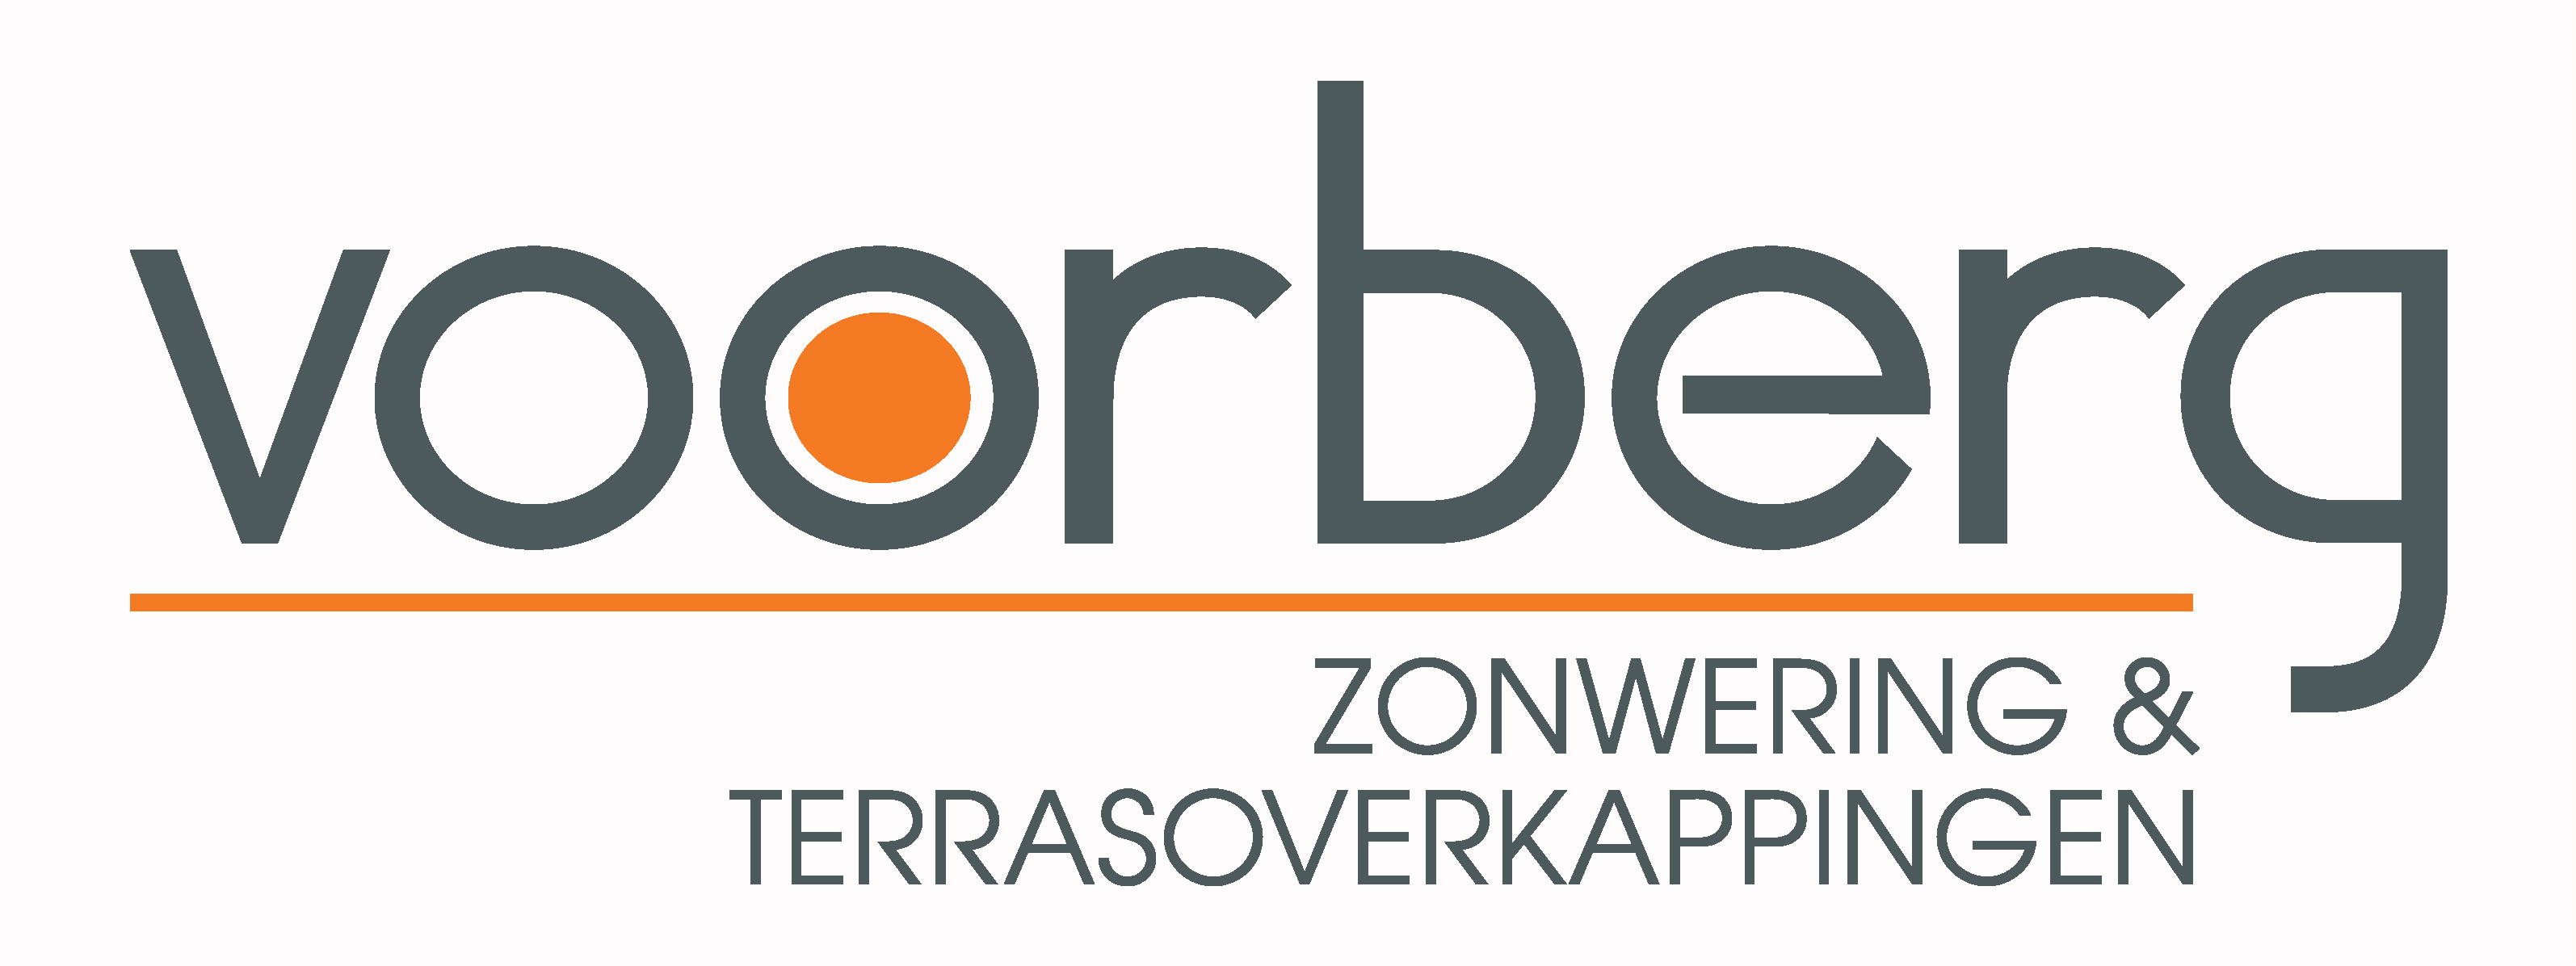 Logo Voorberg Zonwering